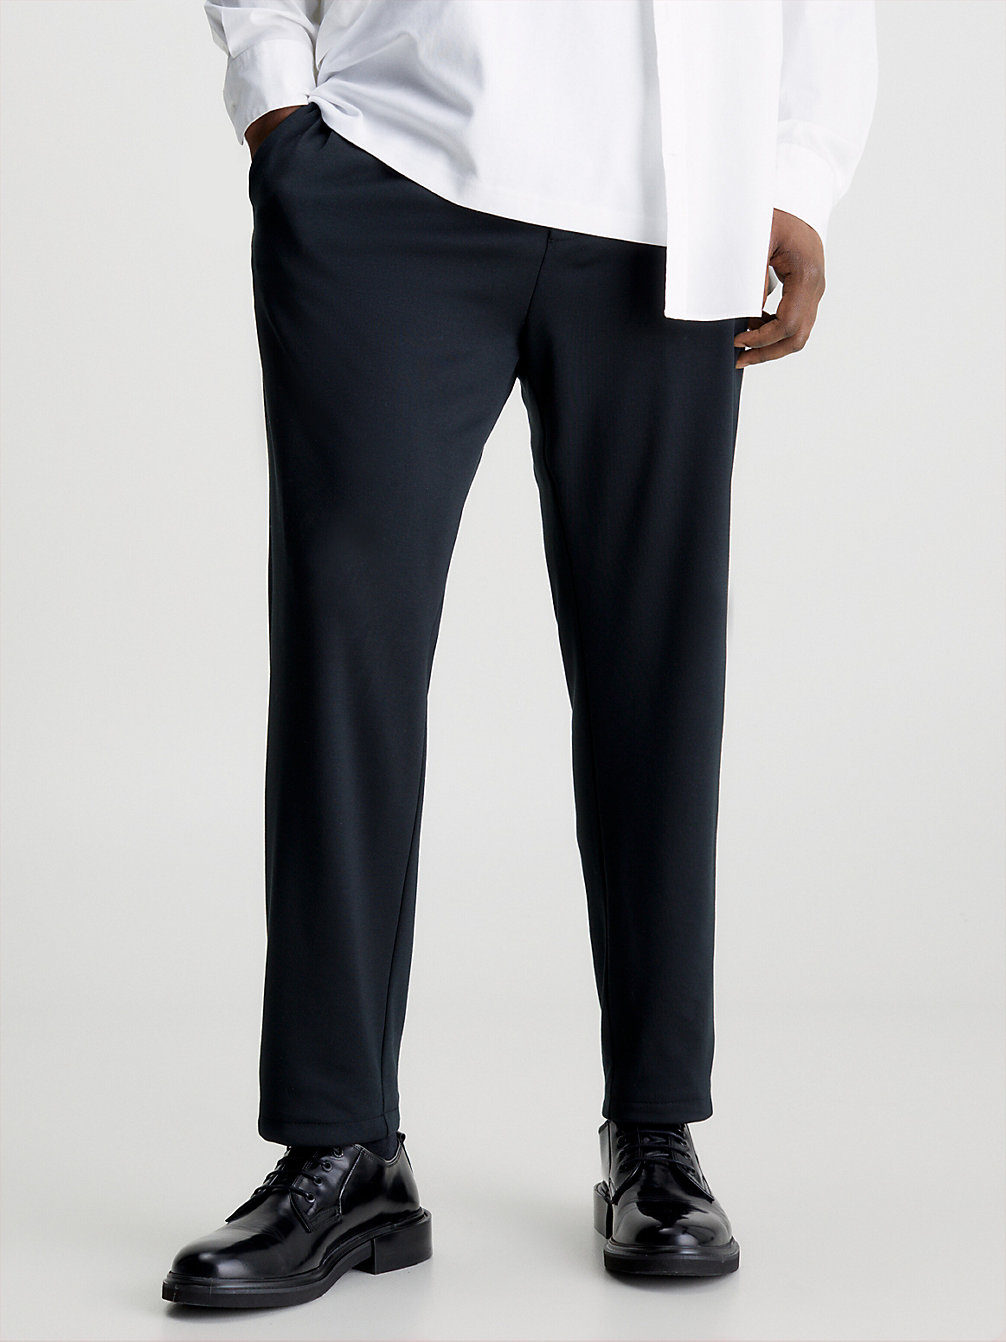 CK BLACK Pantalon Fuselé Grande Taille undefined hommes Calvin Klein